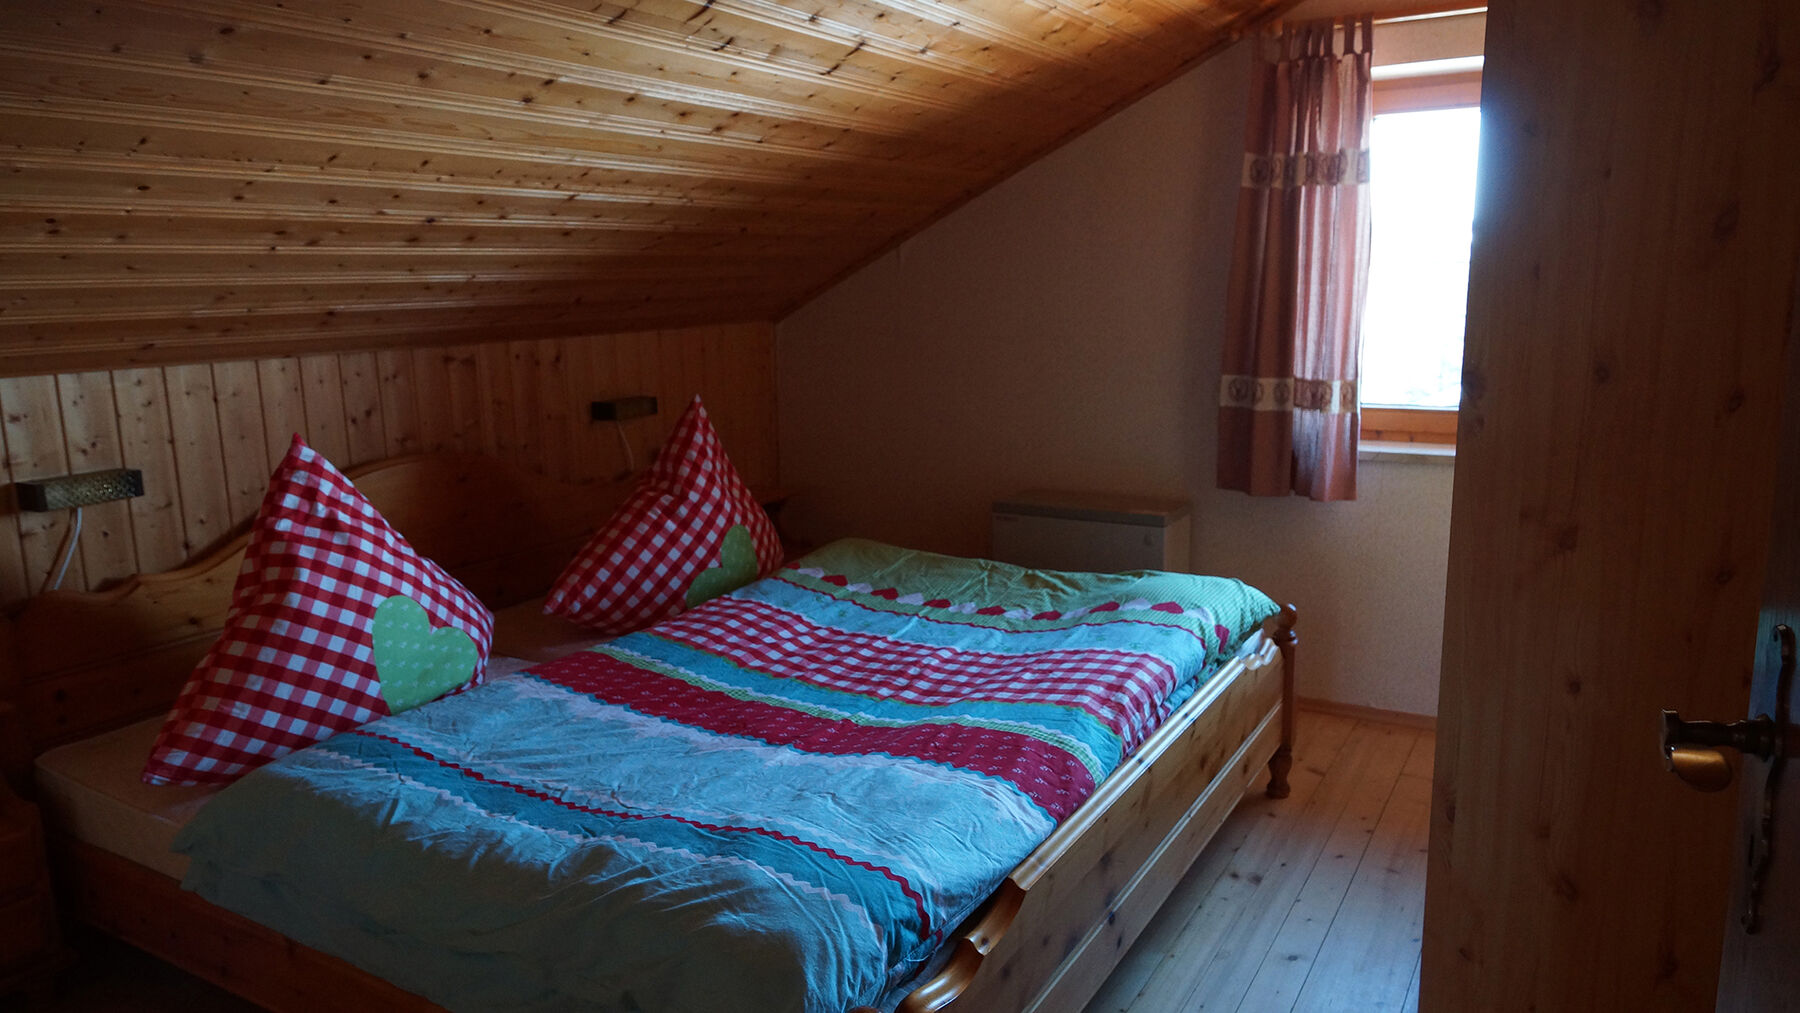 Schlafzimmer 1 DG:Das erste Schlafzimmer im Dach bietet genügend Stauraum für Ihre Kleidung. Die Betten in dem warm eingerichteten Raum versprechen eine angenehme Nachtruhe.